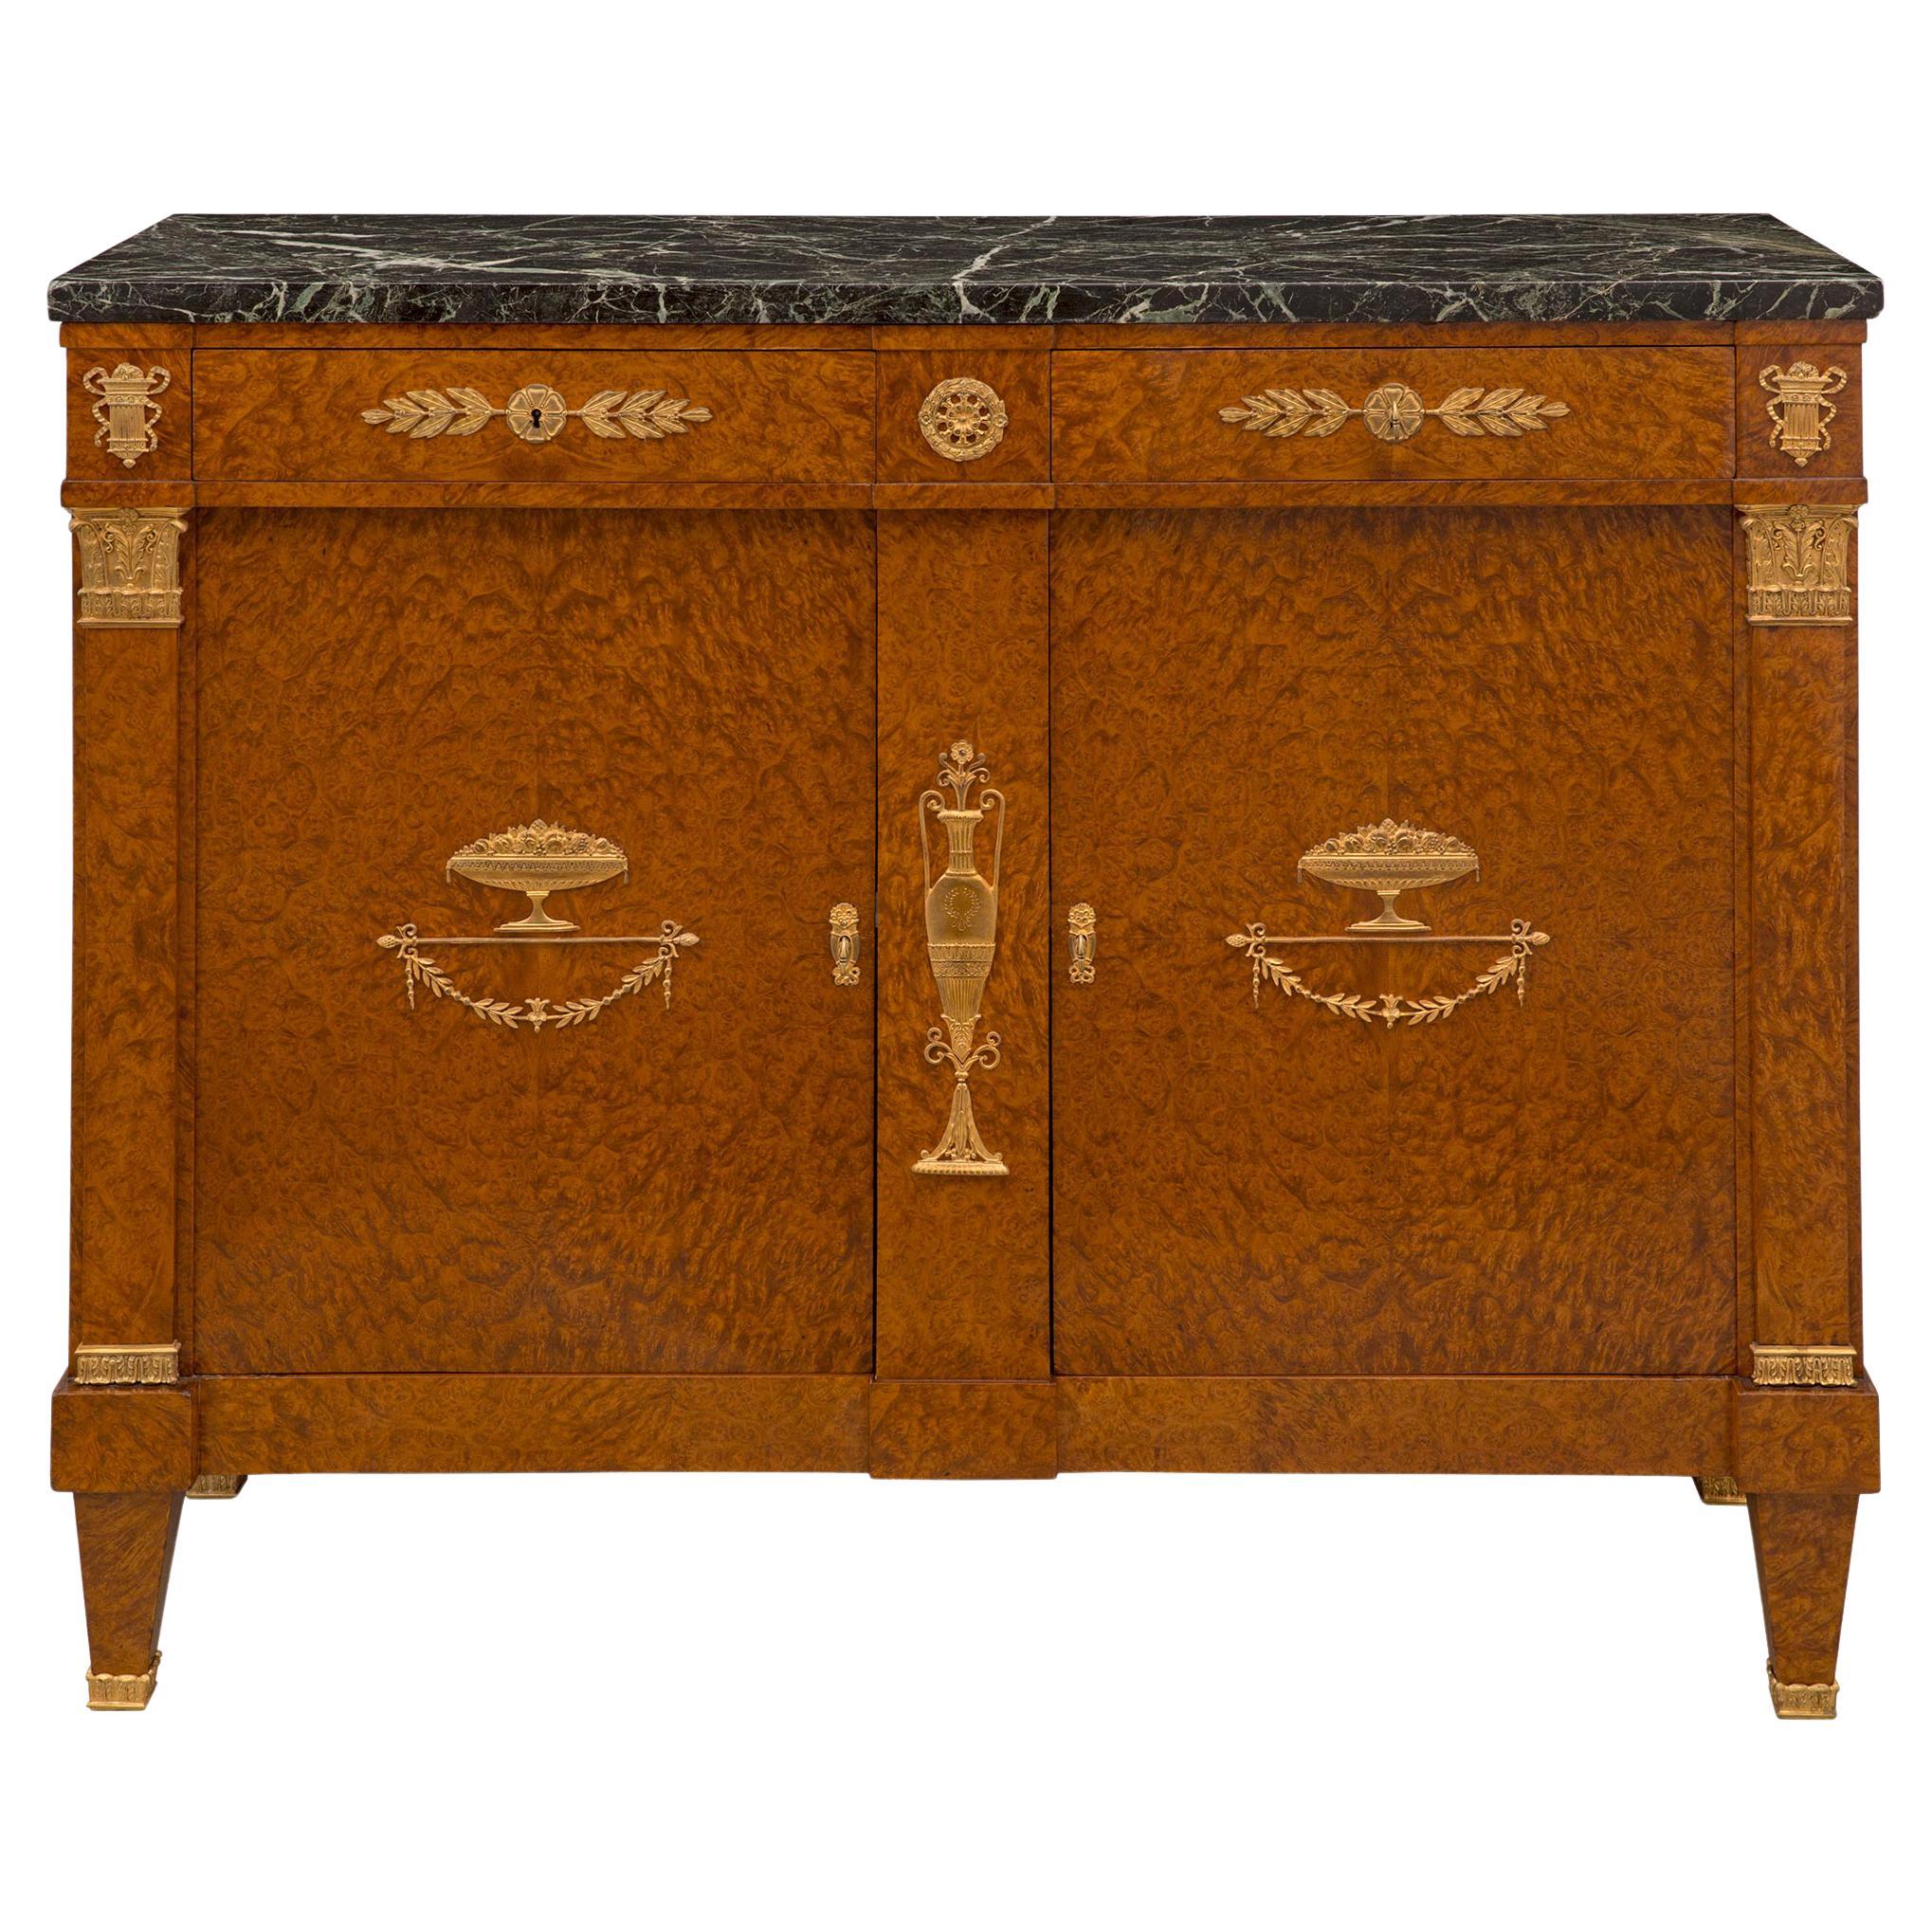 Buffet à deux portes et tiroirs de style néoclassique français du XIXe siècle en noyer et bronze doré